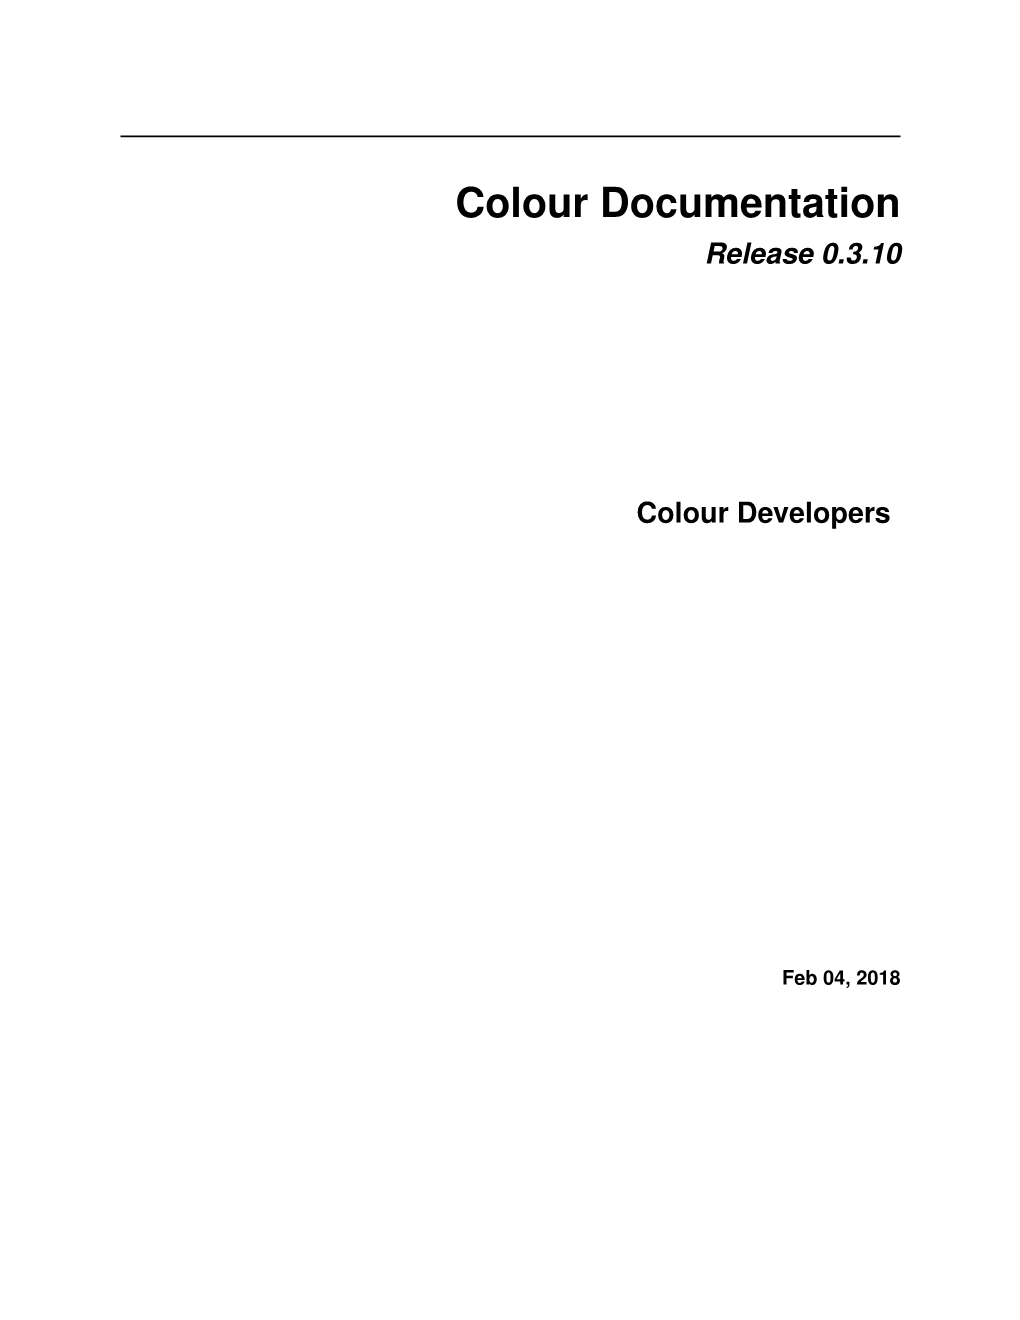 Colour Documentation Release 0.3.10